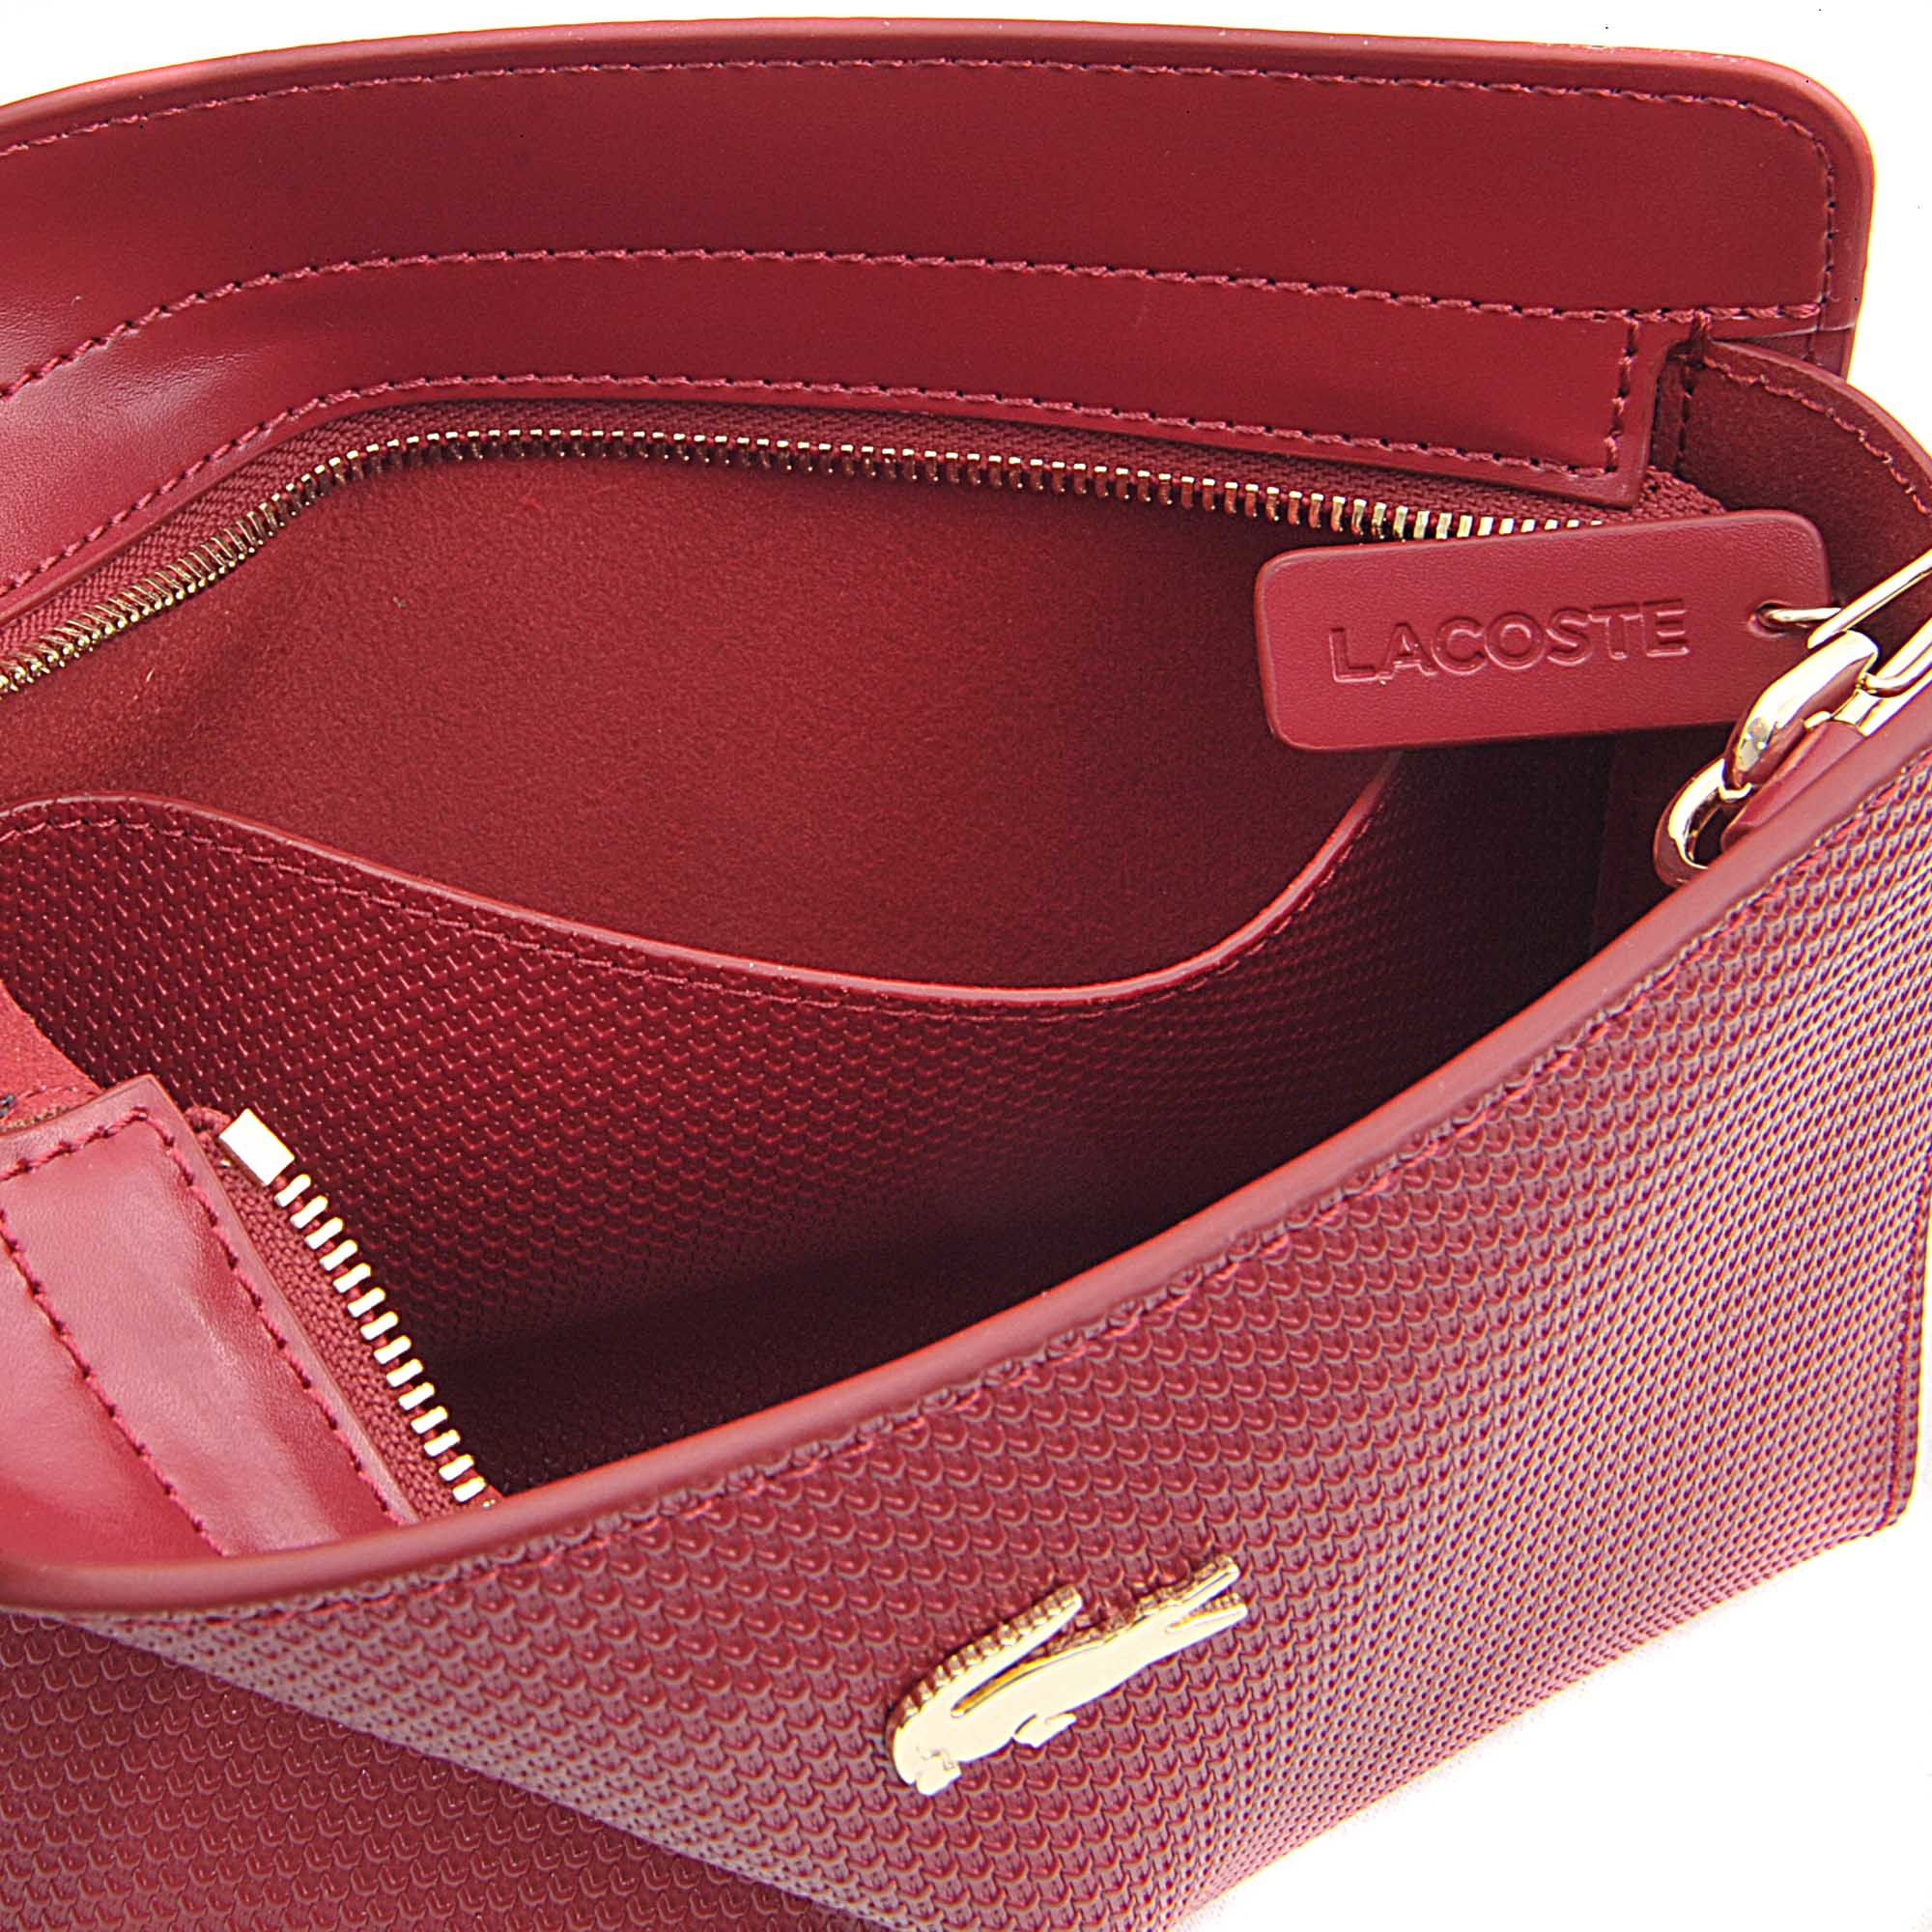 lacoste handbags sale